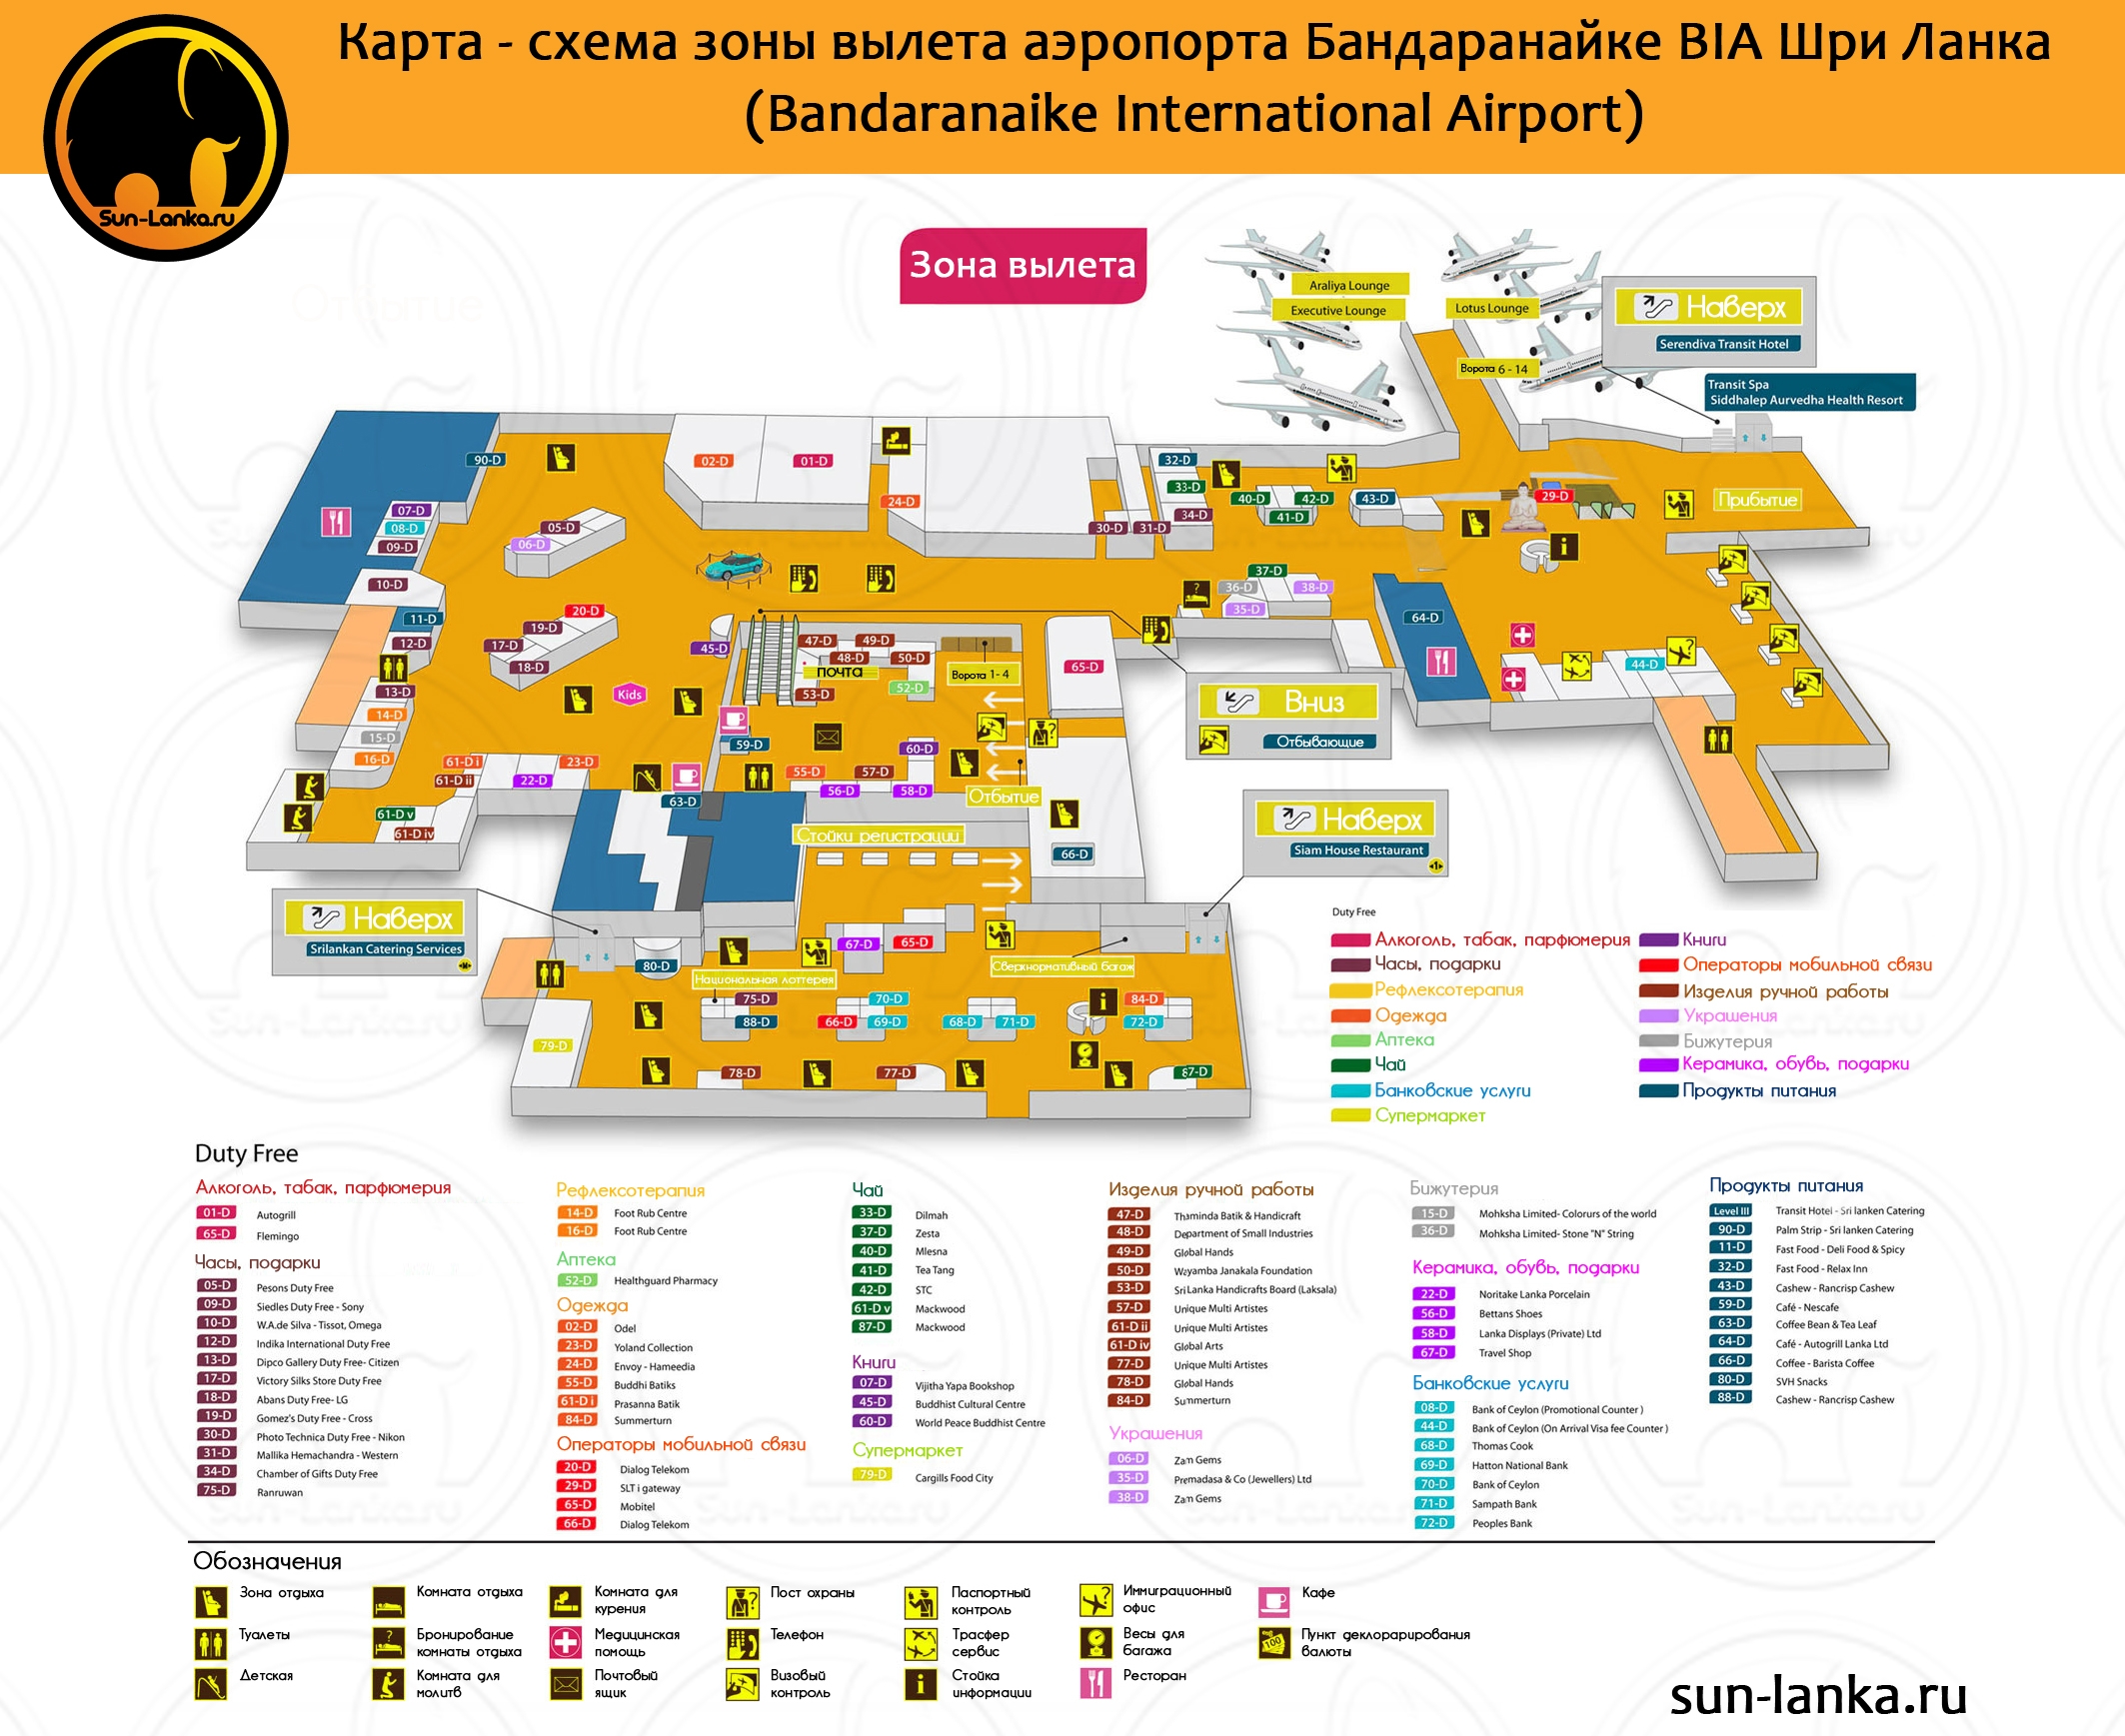 Аэропорт бильбао (bilbao airport - aeropuerto de bilbao) — испания на русском - русская испания